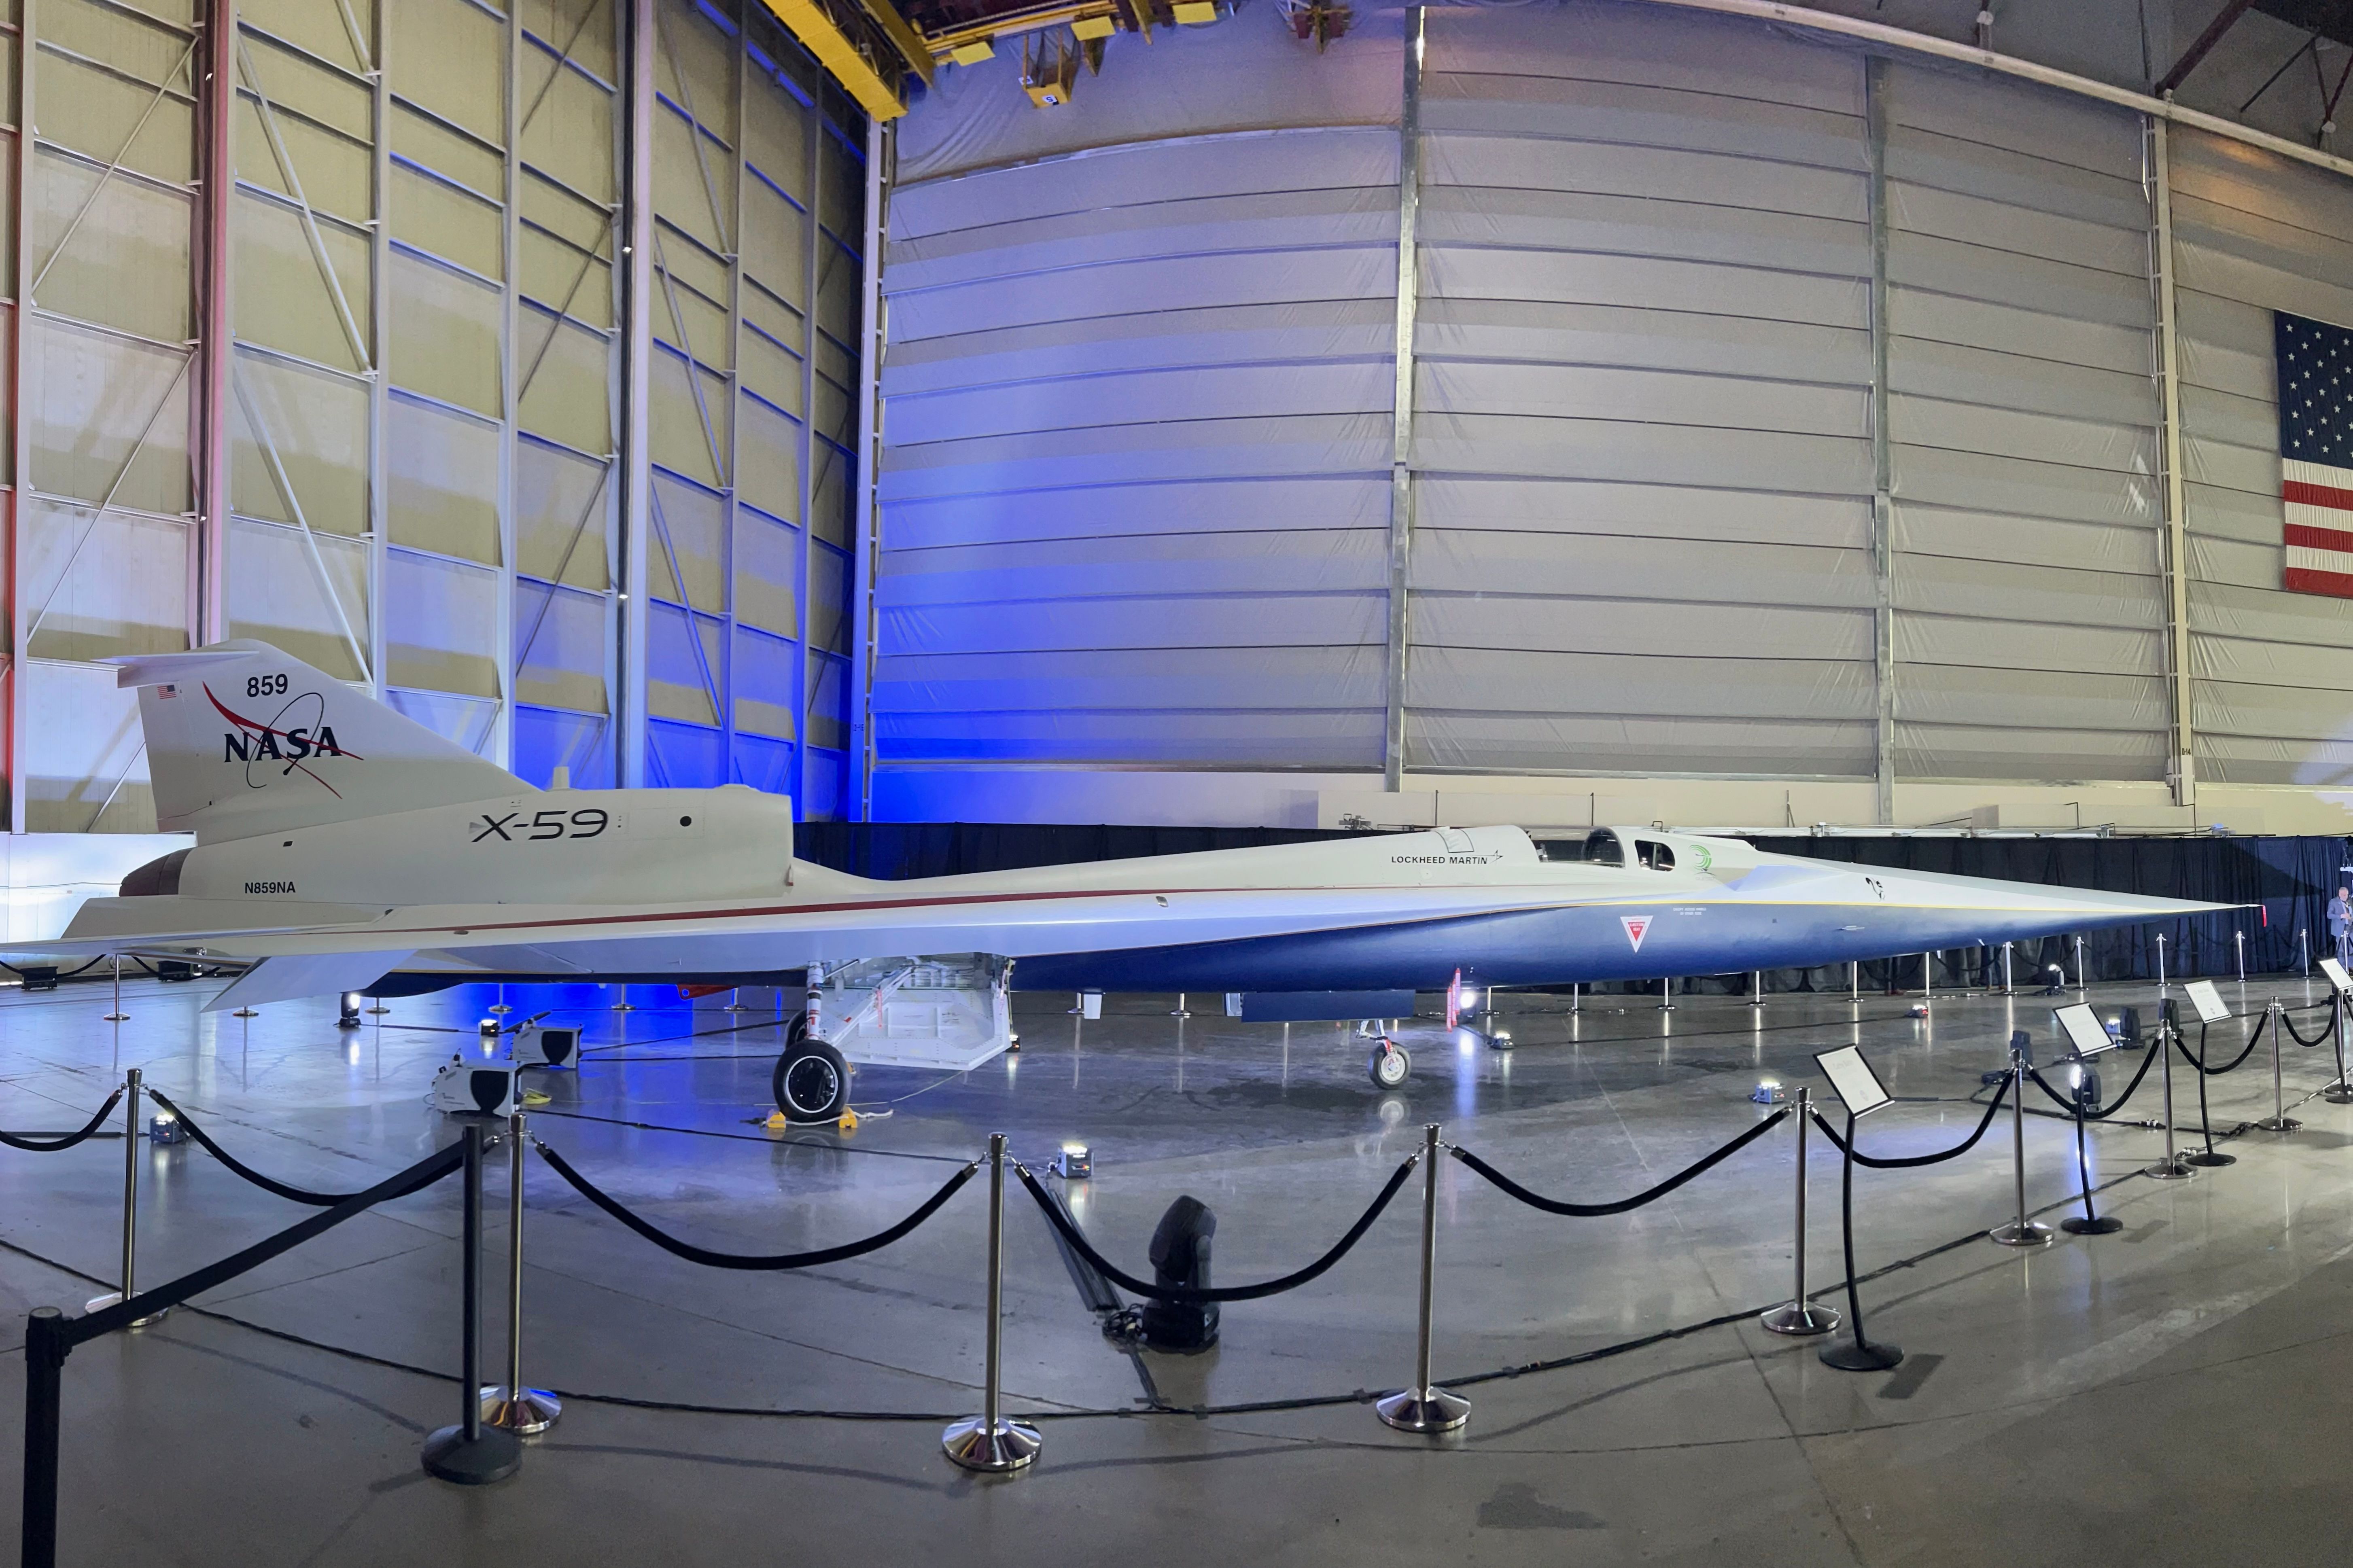 The NASA and Lockheed Martin X-59